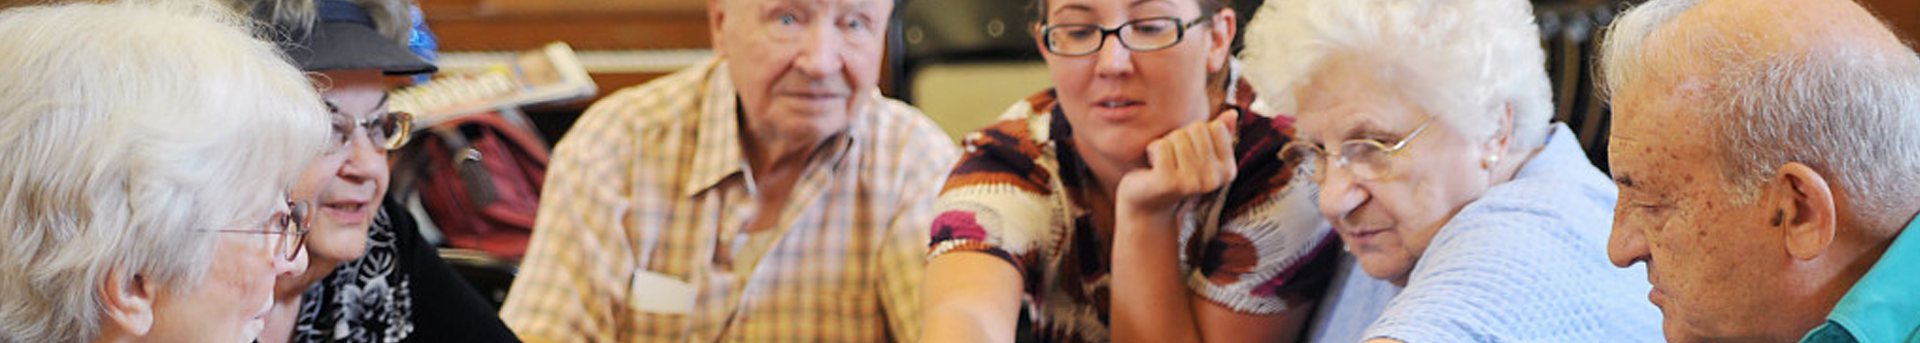 CDM Caregiving services focuses on Elder Care